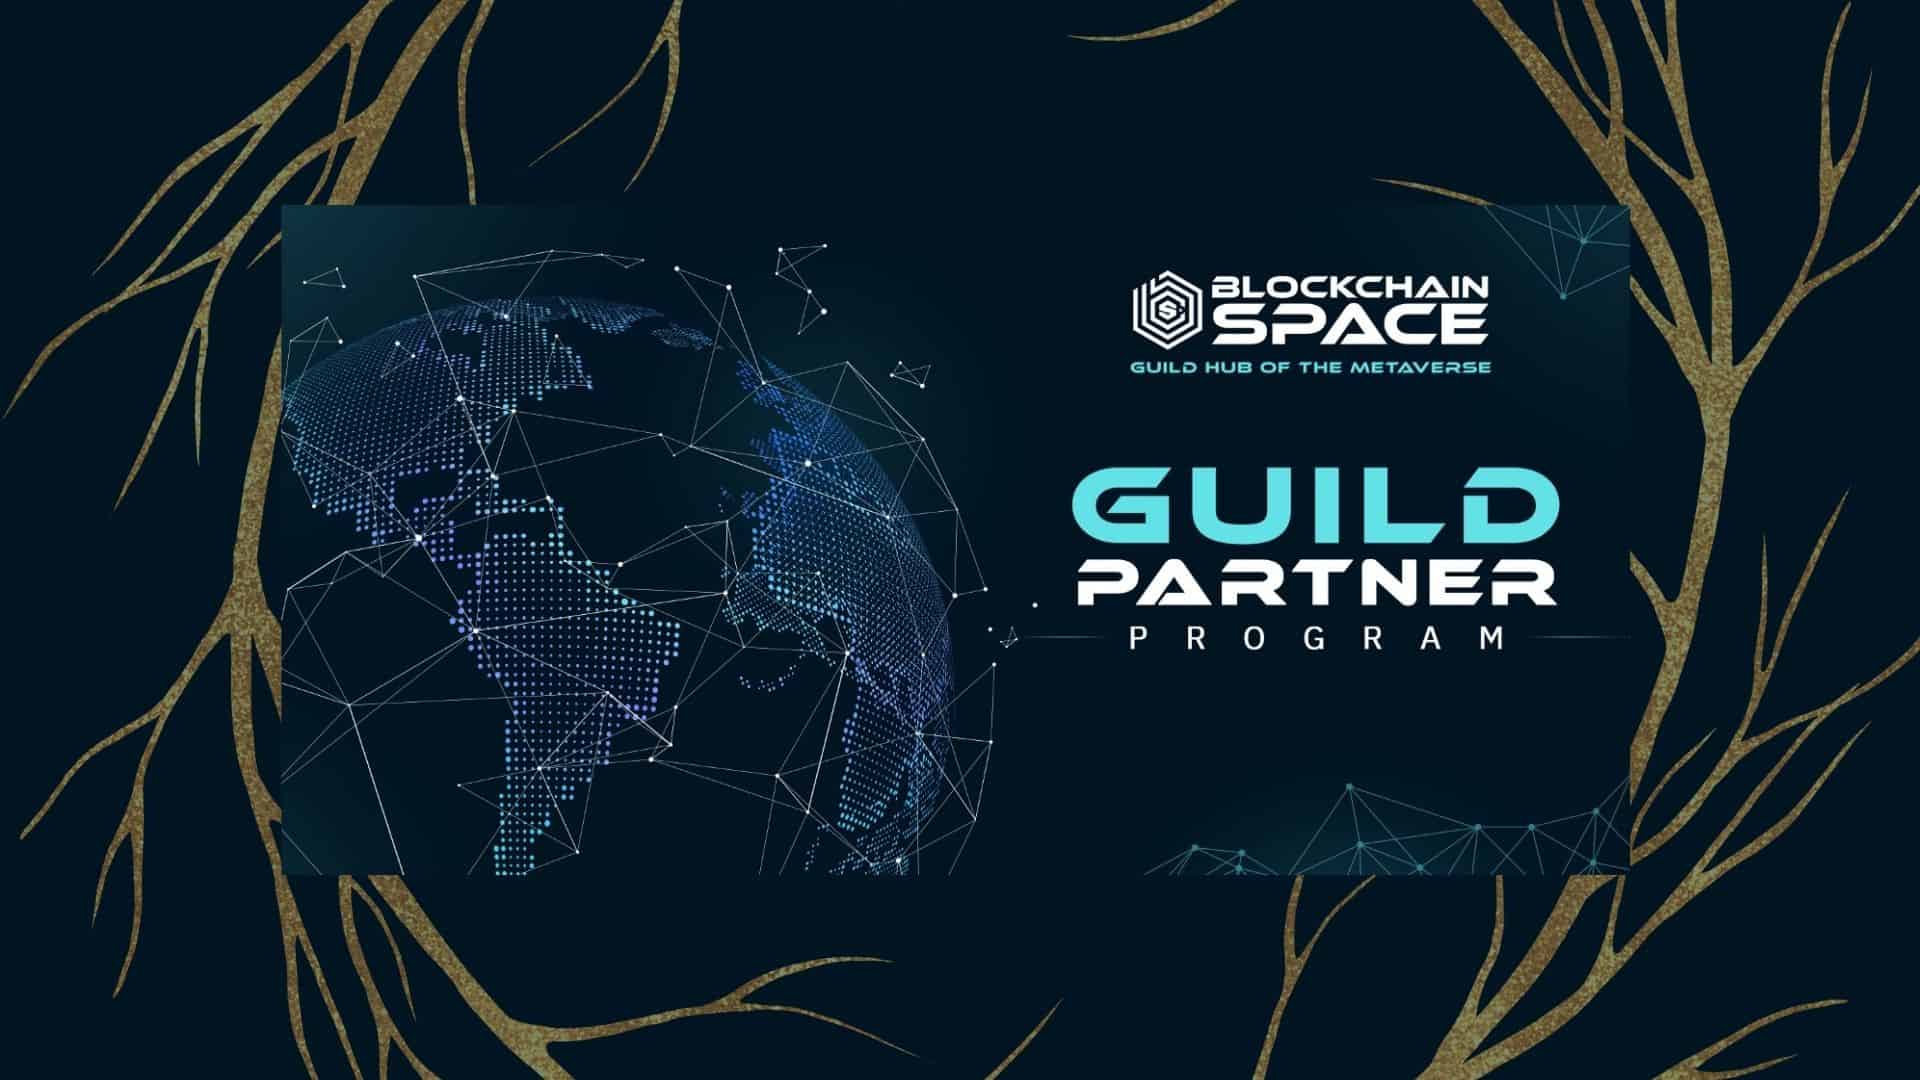 BlockchainSpace Introduces its Guild Partner Program